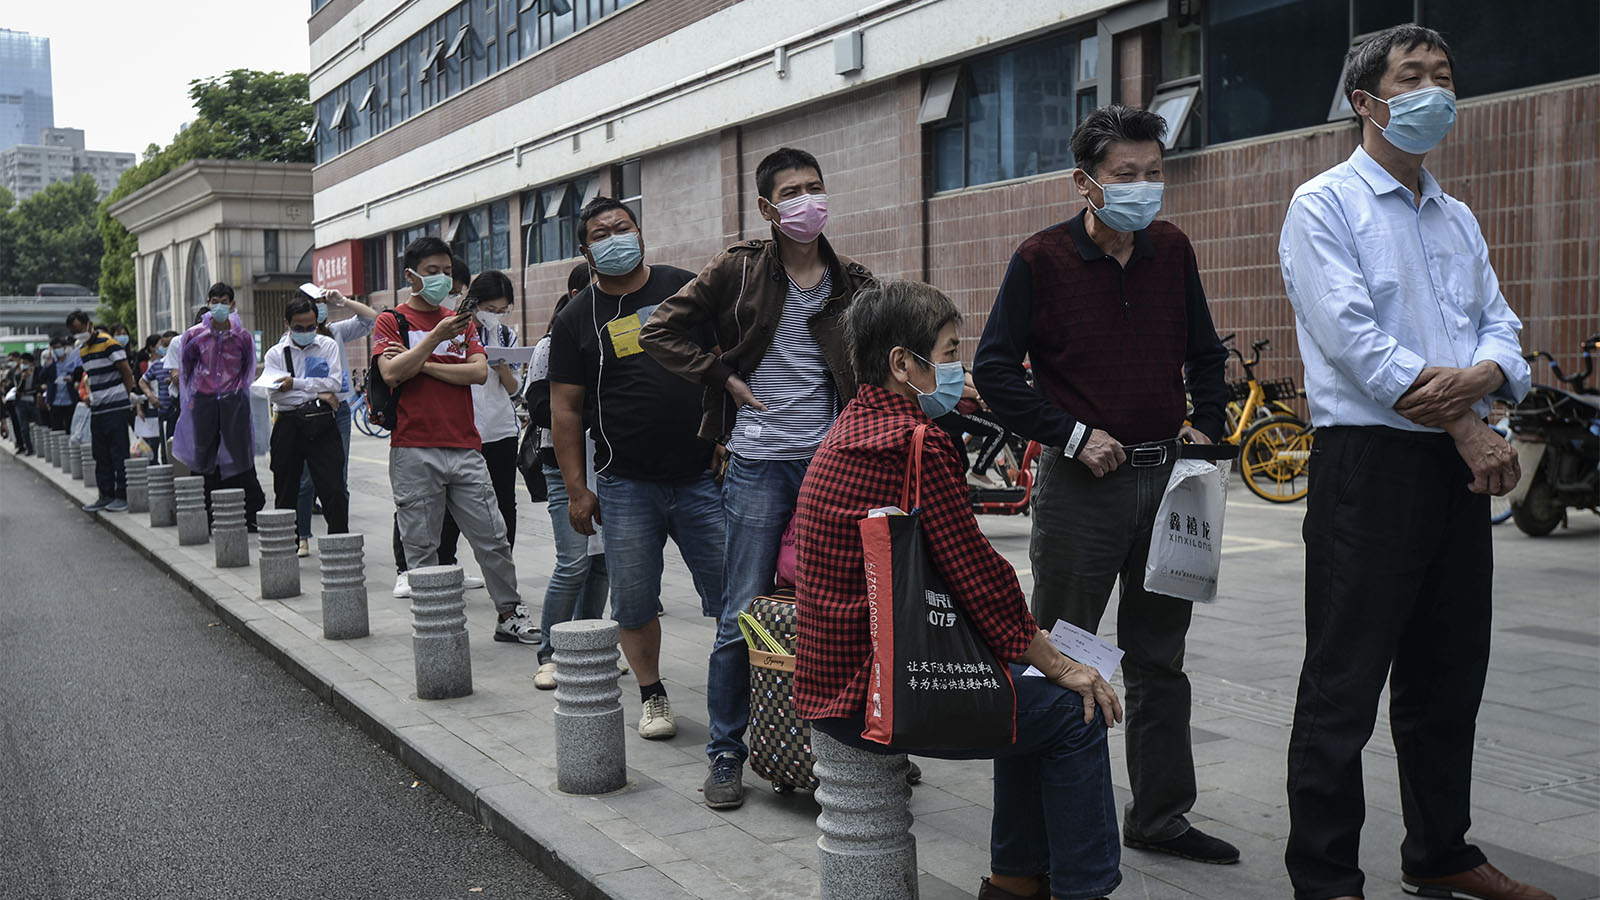 ממתינים בתור לבדיקות קורונה המוניות במחוז ווהאן בסין. 14 במאי 2020 (צילום: Feature China/Barcroft Media via Getty Images)